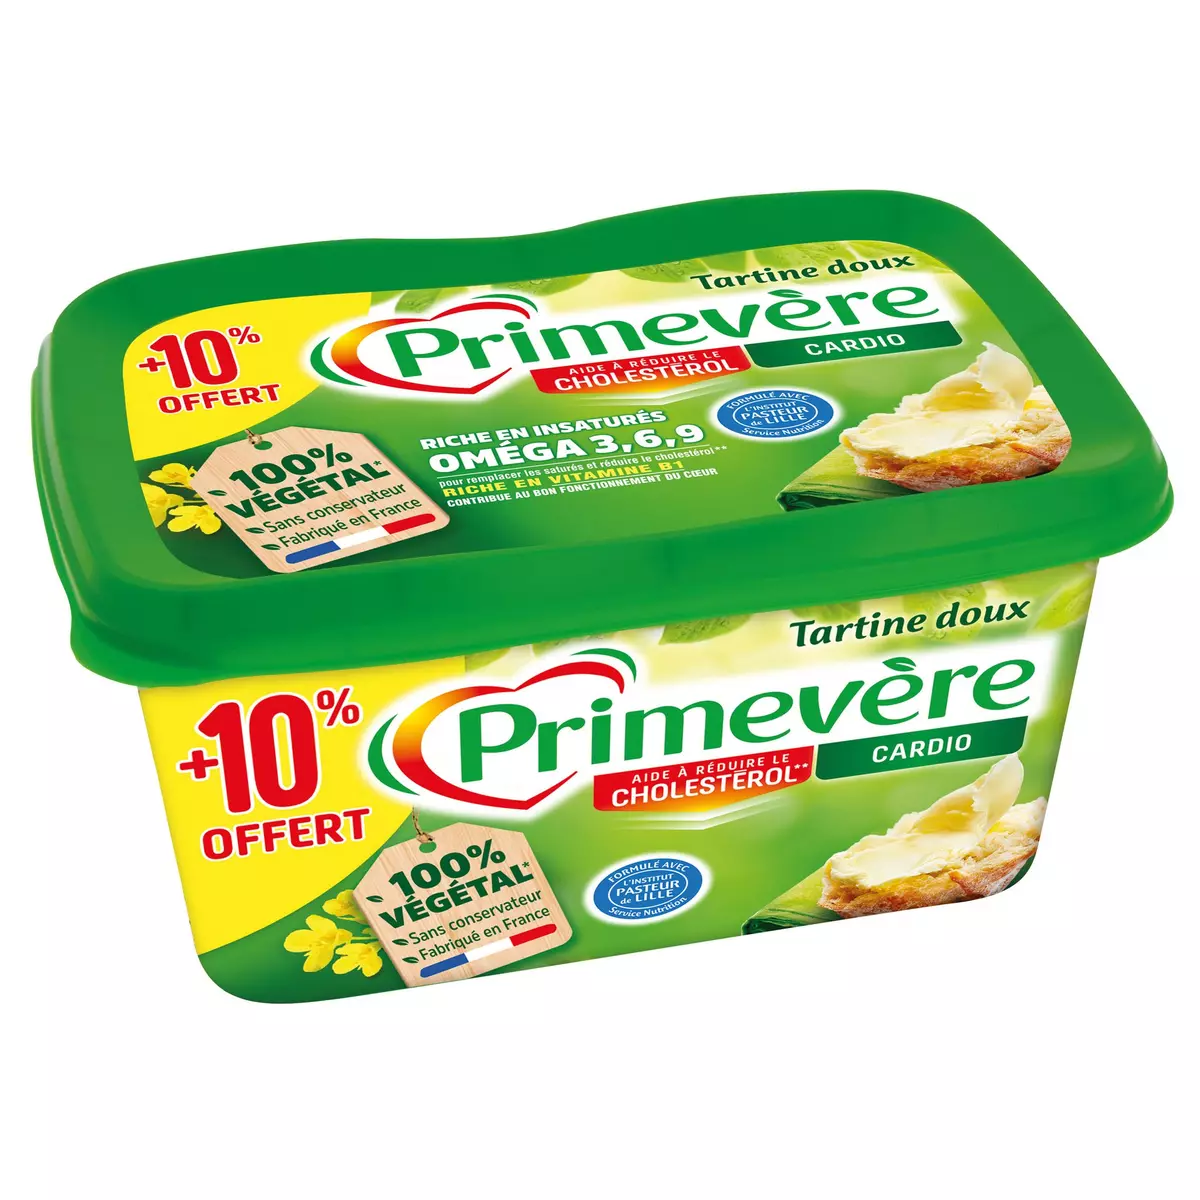 Margarine : bienfaits, conservation, valeurs nutritrionnelles